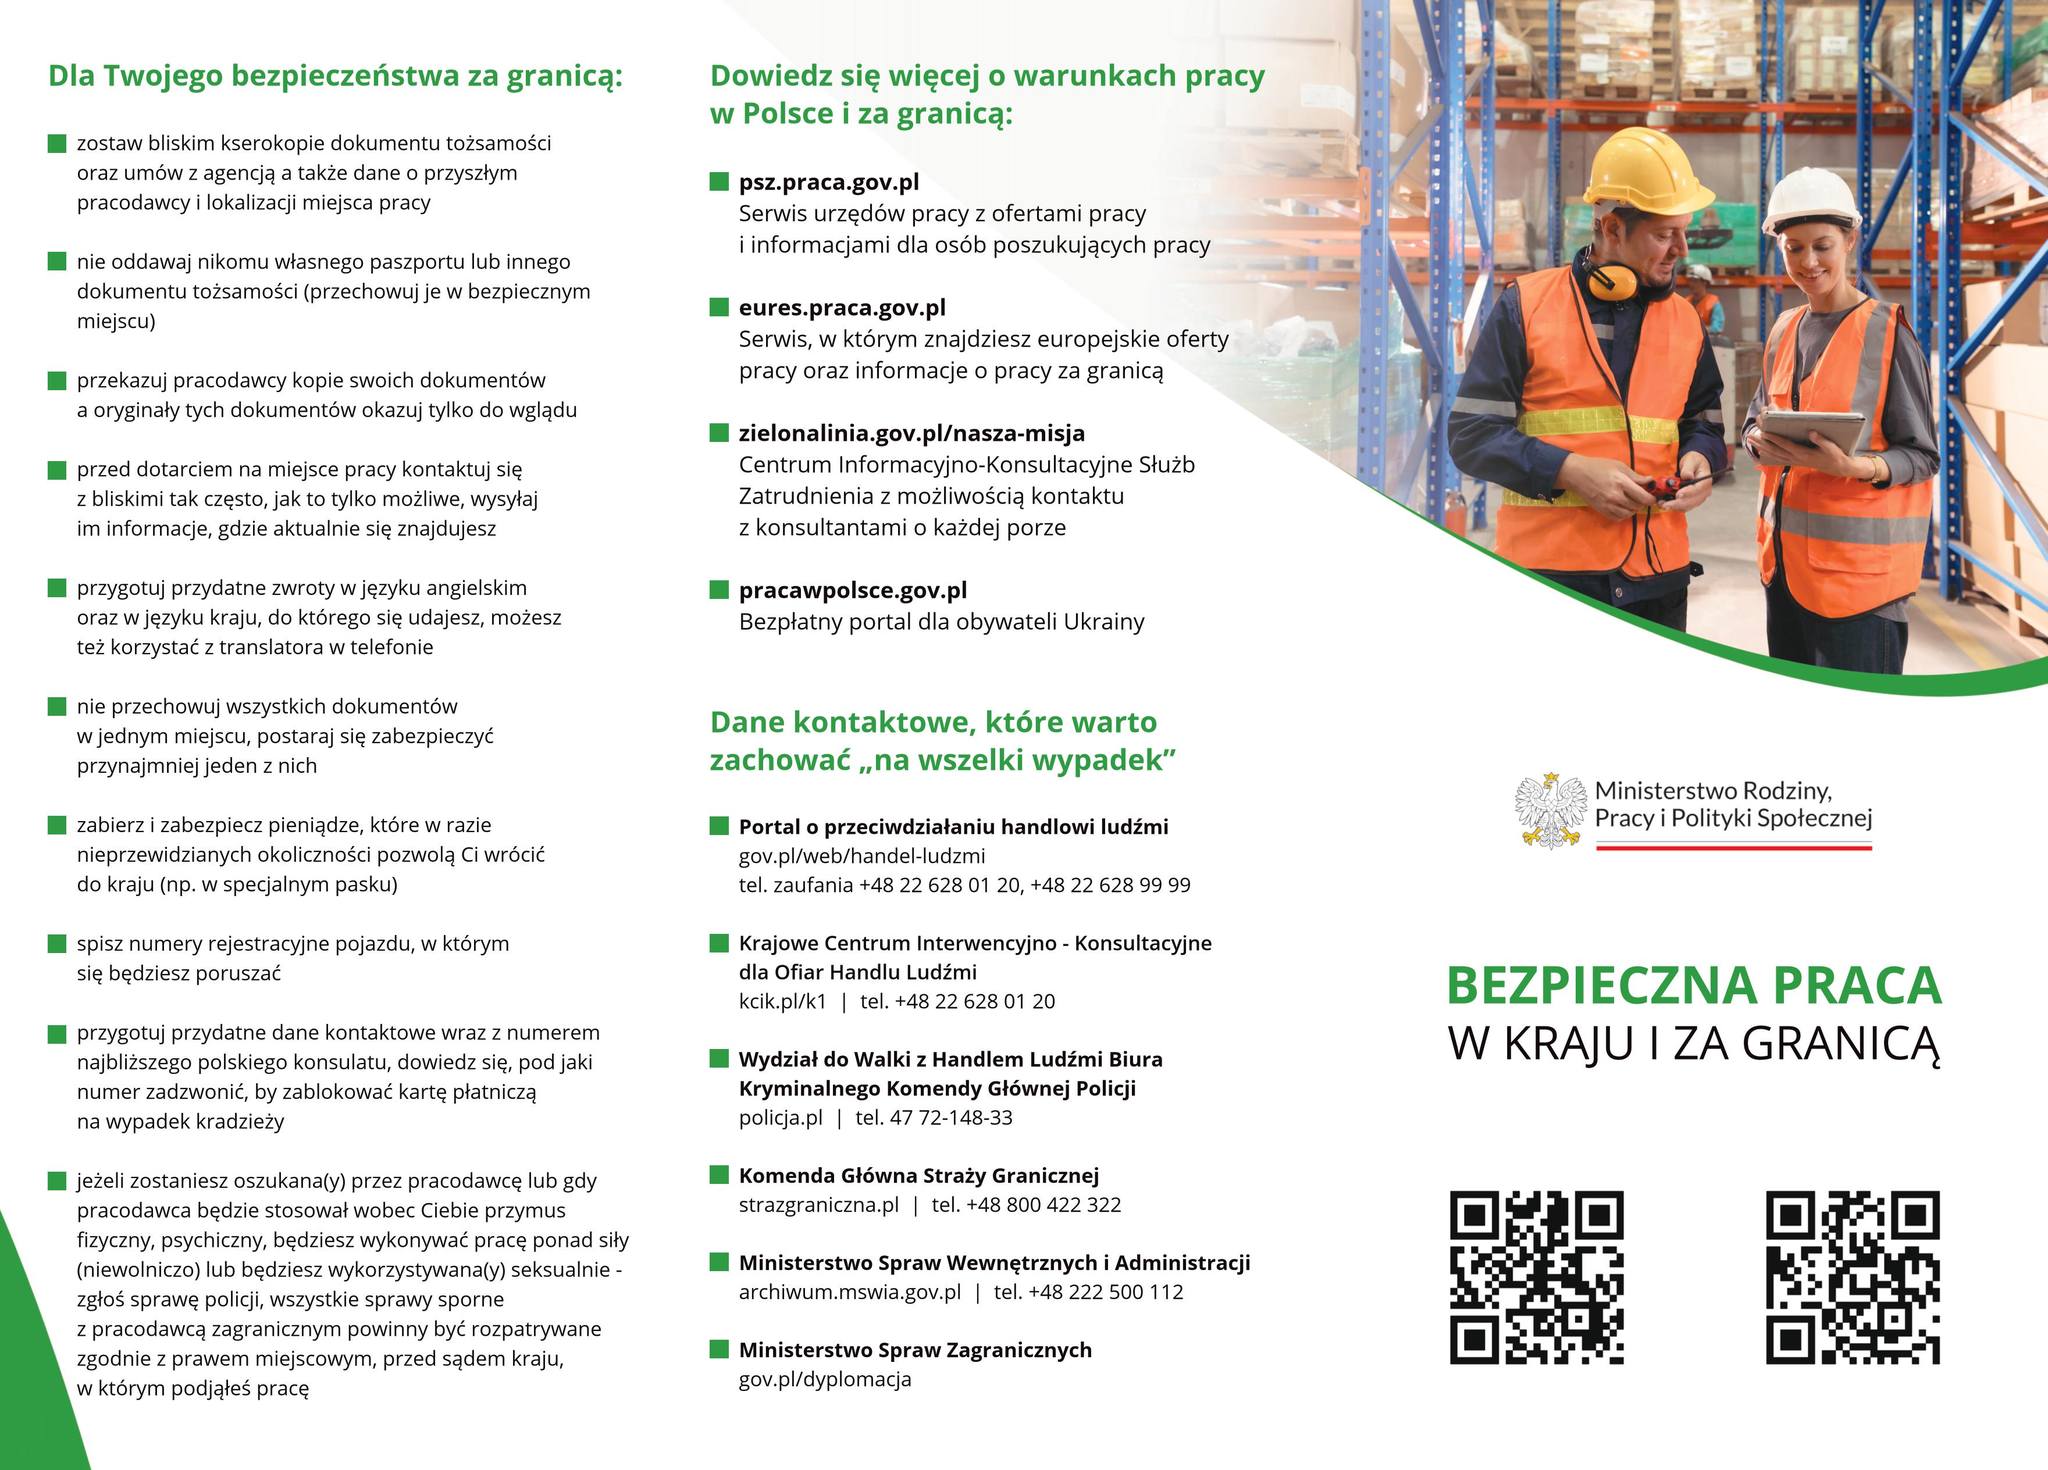 plakat informacyjny dotyczący akcji bezpieczna praca